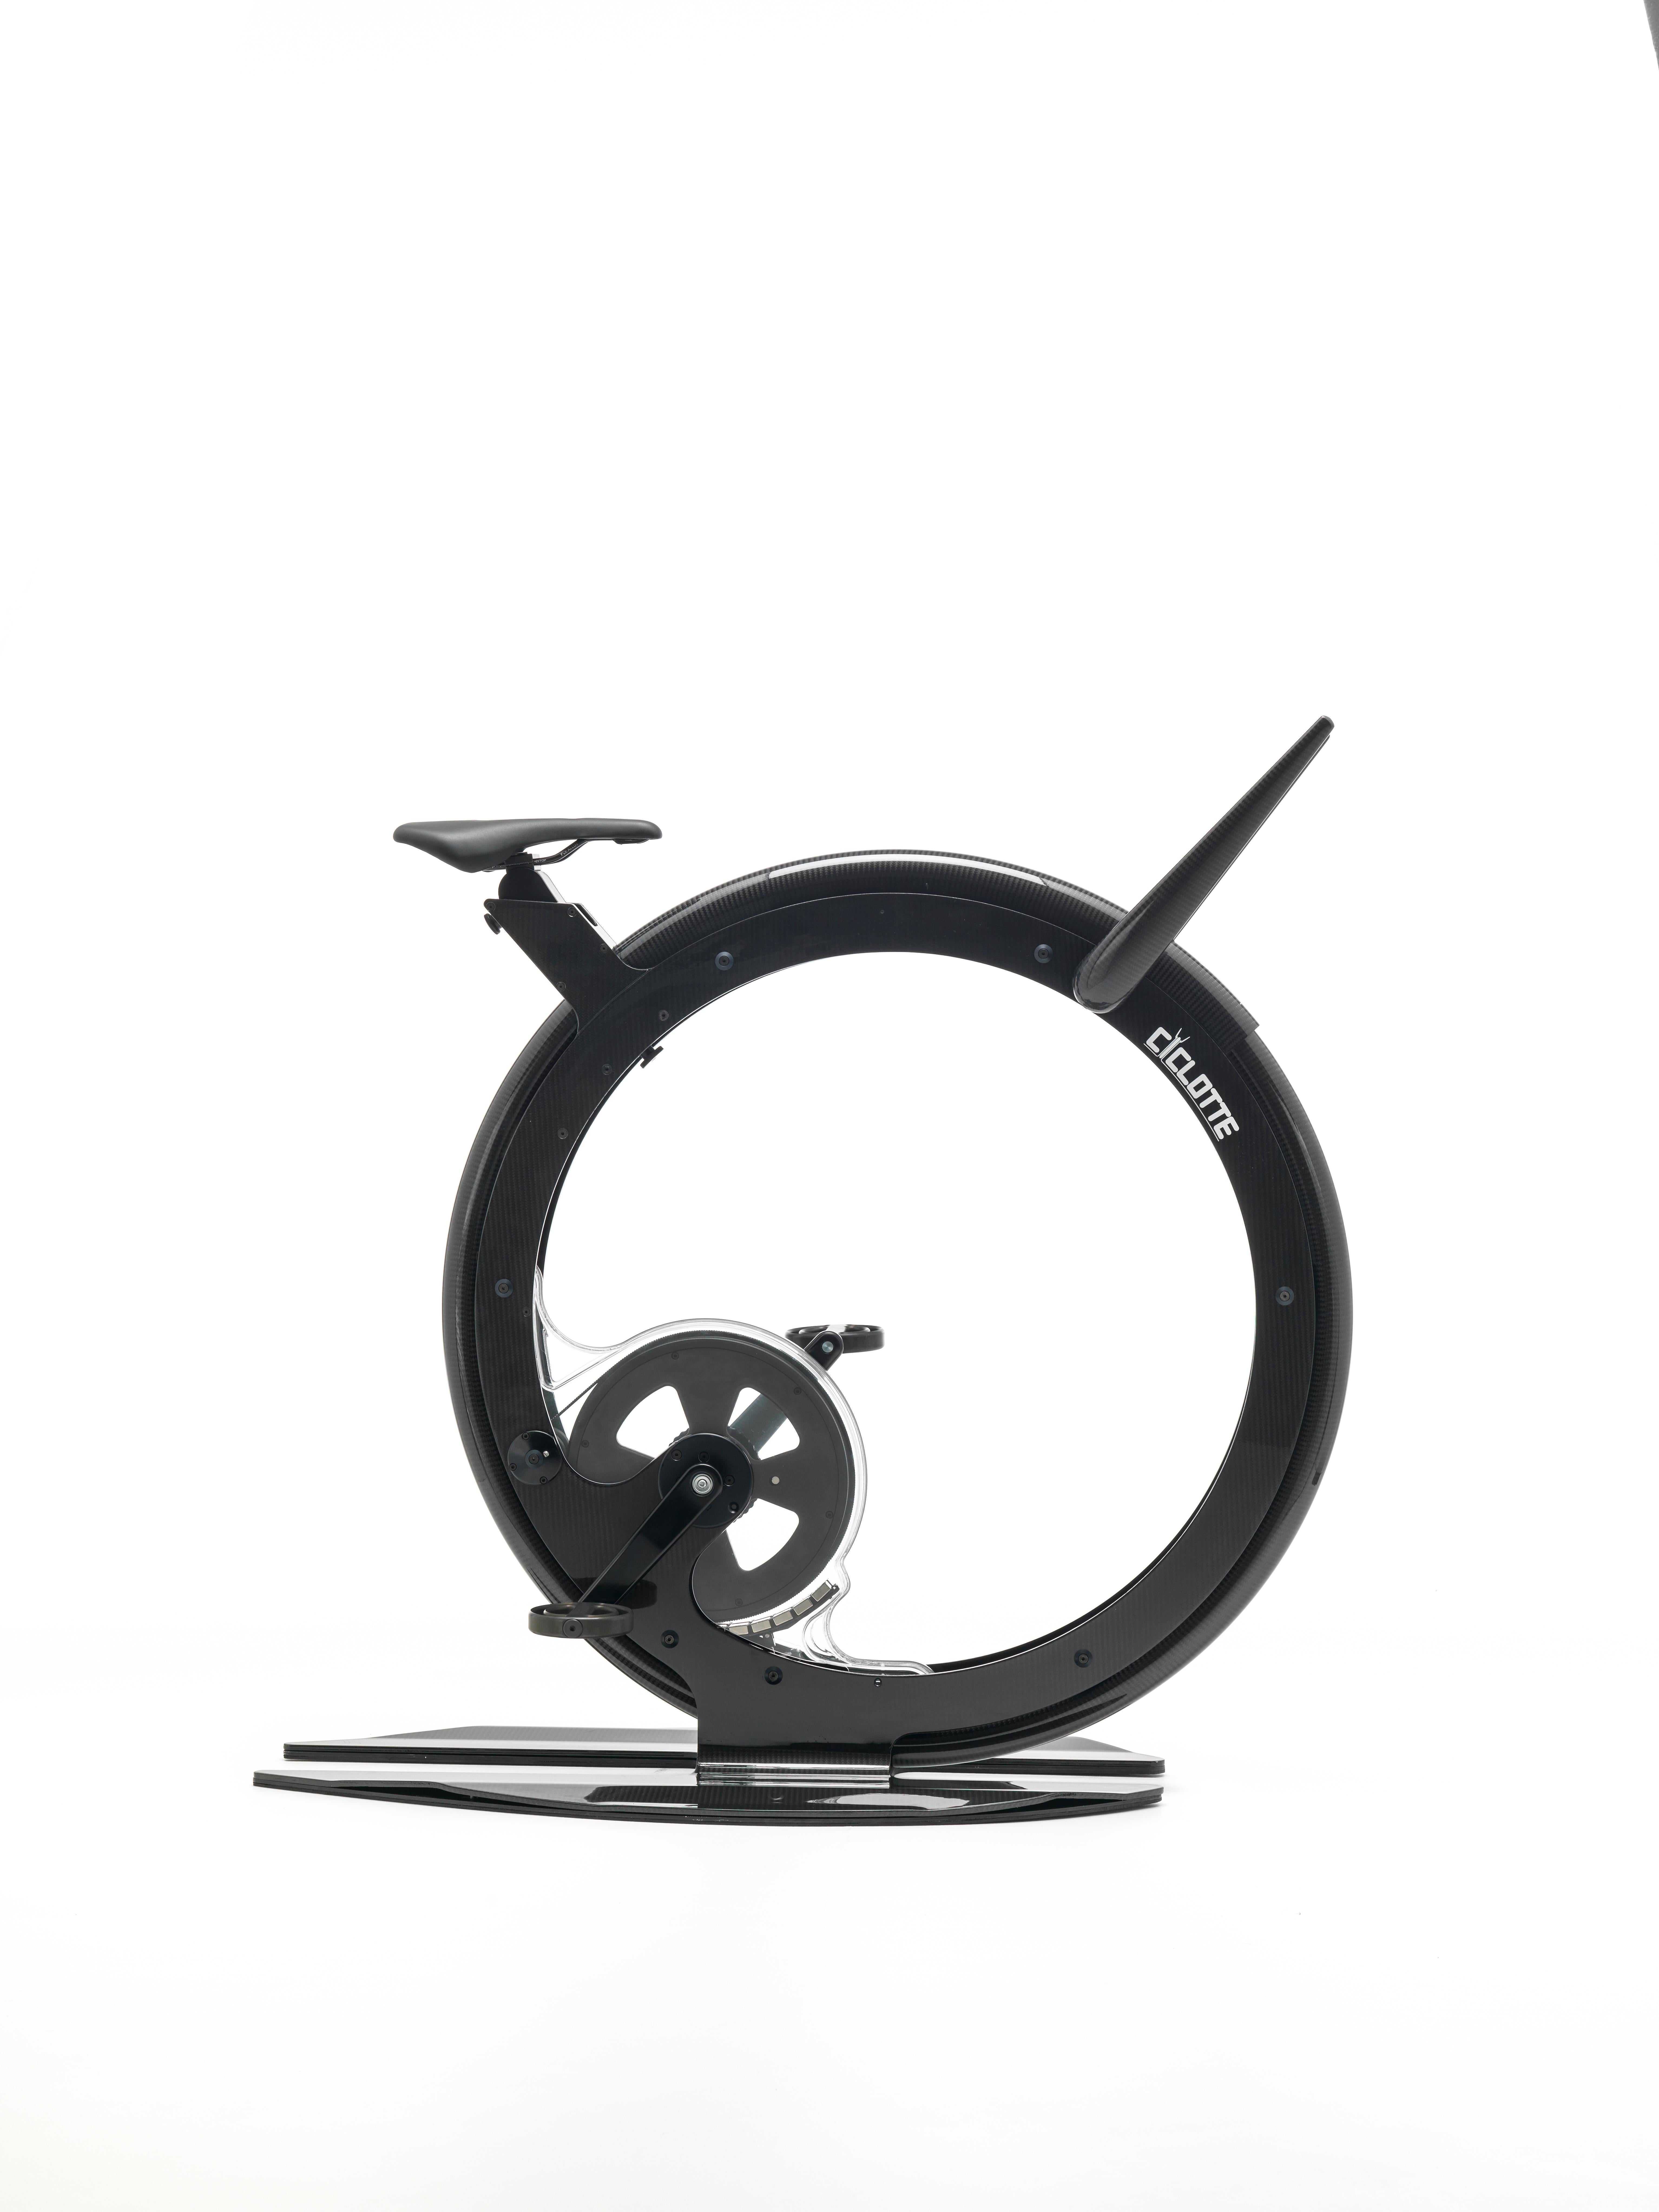 Ciclotte bike ist ein innovativer Heimtrainer, entworfen und hergestellt in Italien, der Idee, Form und Technologie vereint und die traditionellen ästhetischen und funktionellen Werte eines Heimtrainers neu überdenkt. Das Ciclotte-Fahrrad wurde aus